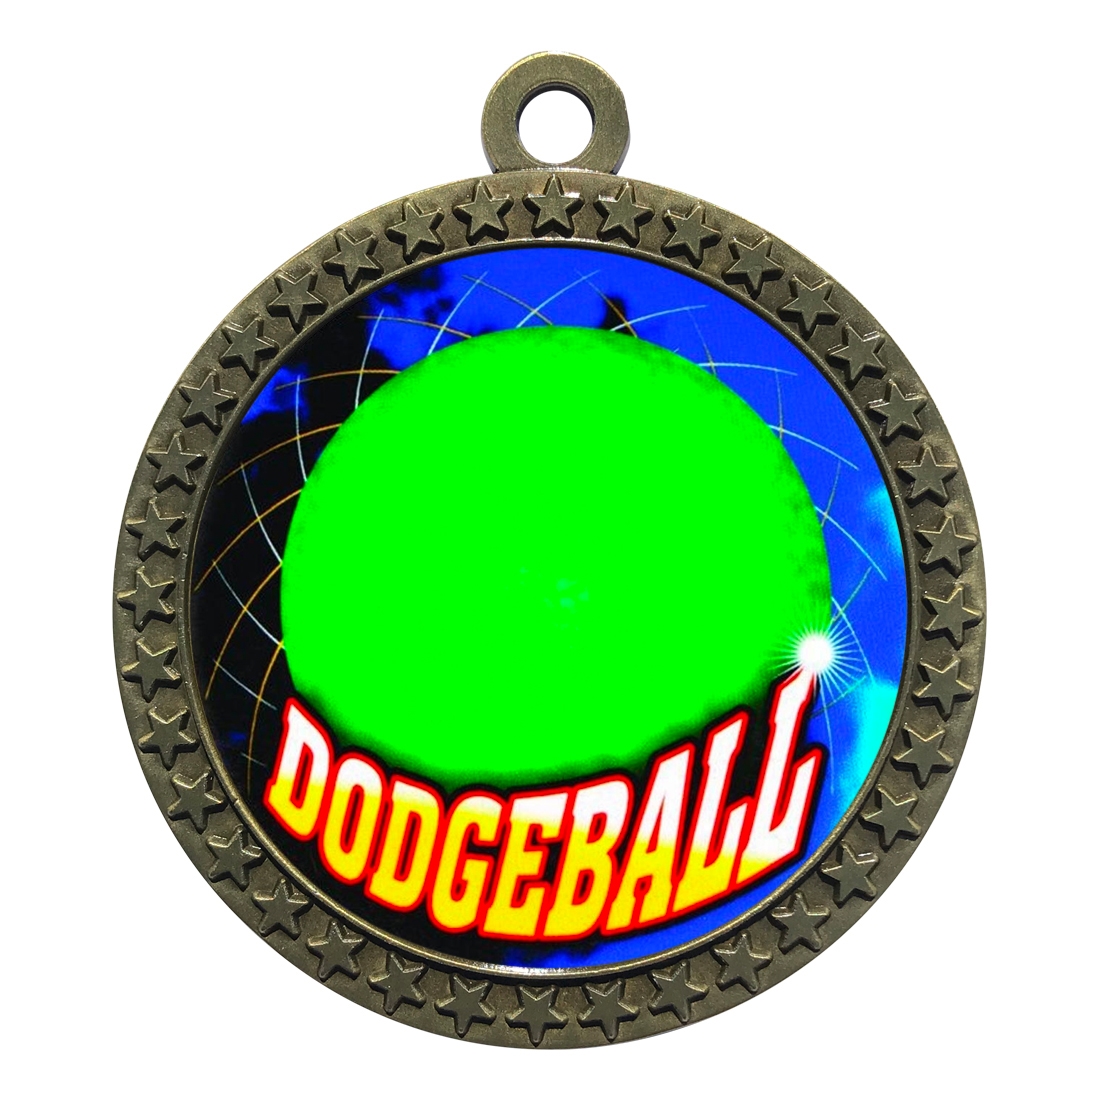 2-1/2" Dodgeball Medal